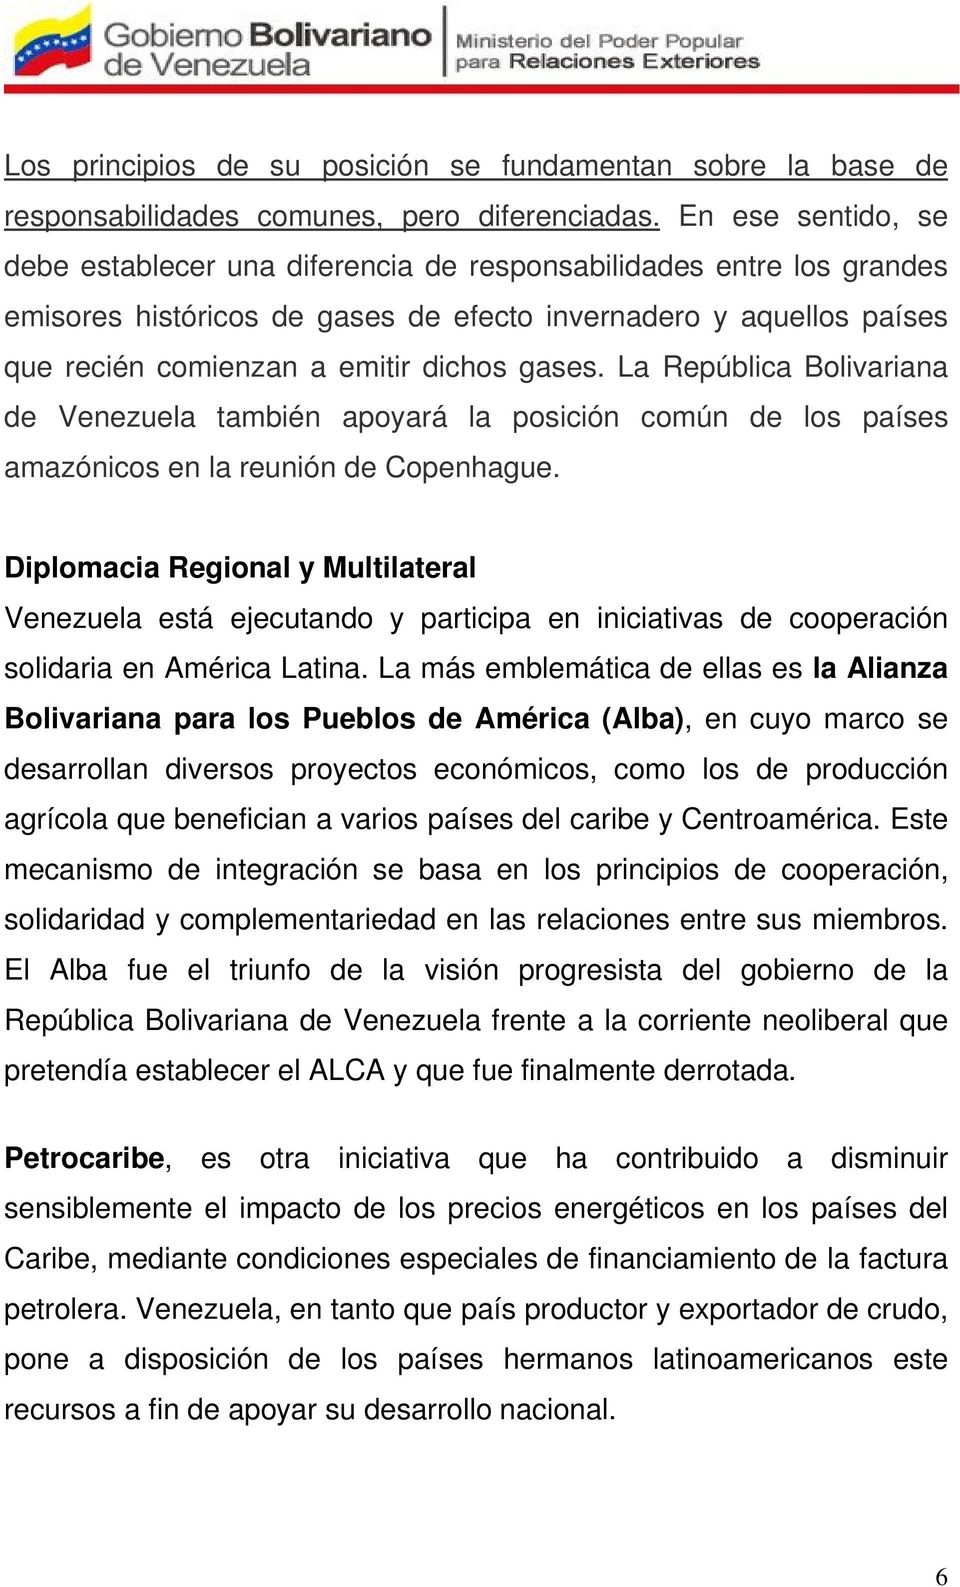 gases. La República Bolivariana de Venezuela también apoyará la posición común de los países amazónicos en la reunión de Copenhague.